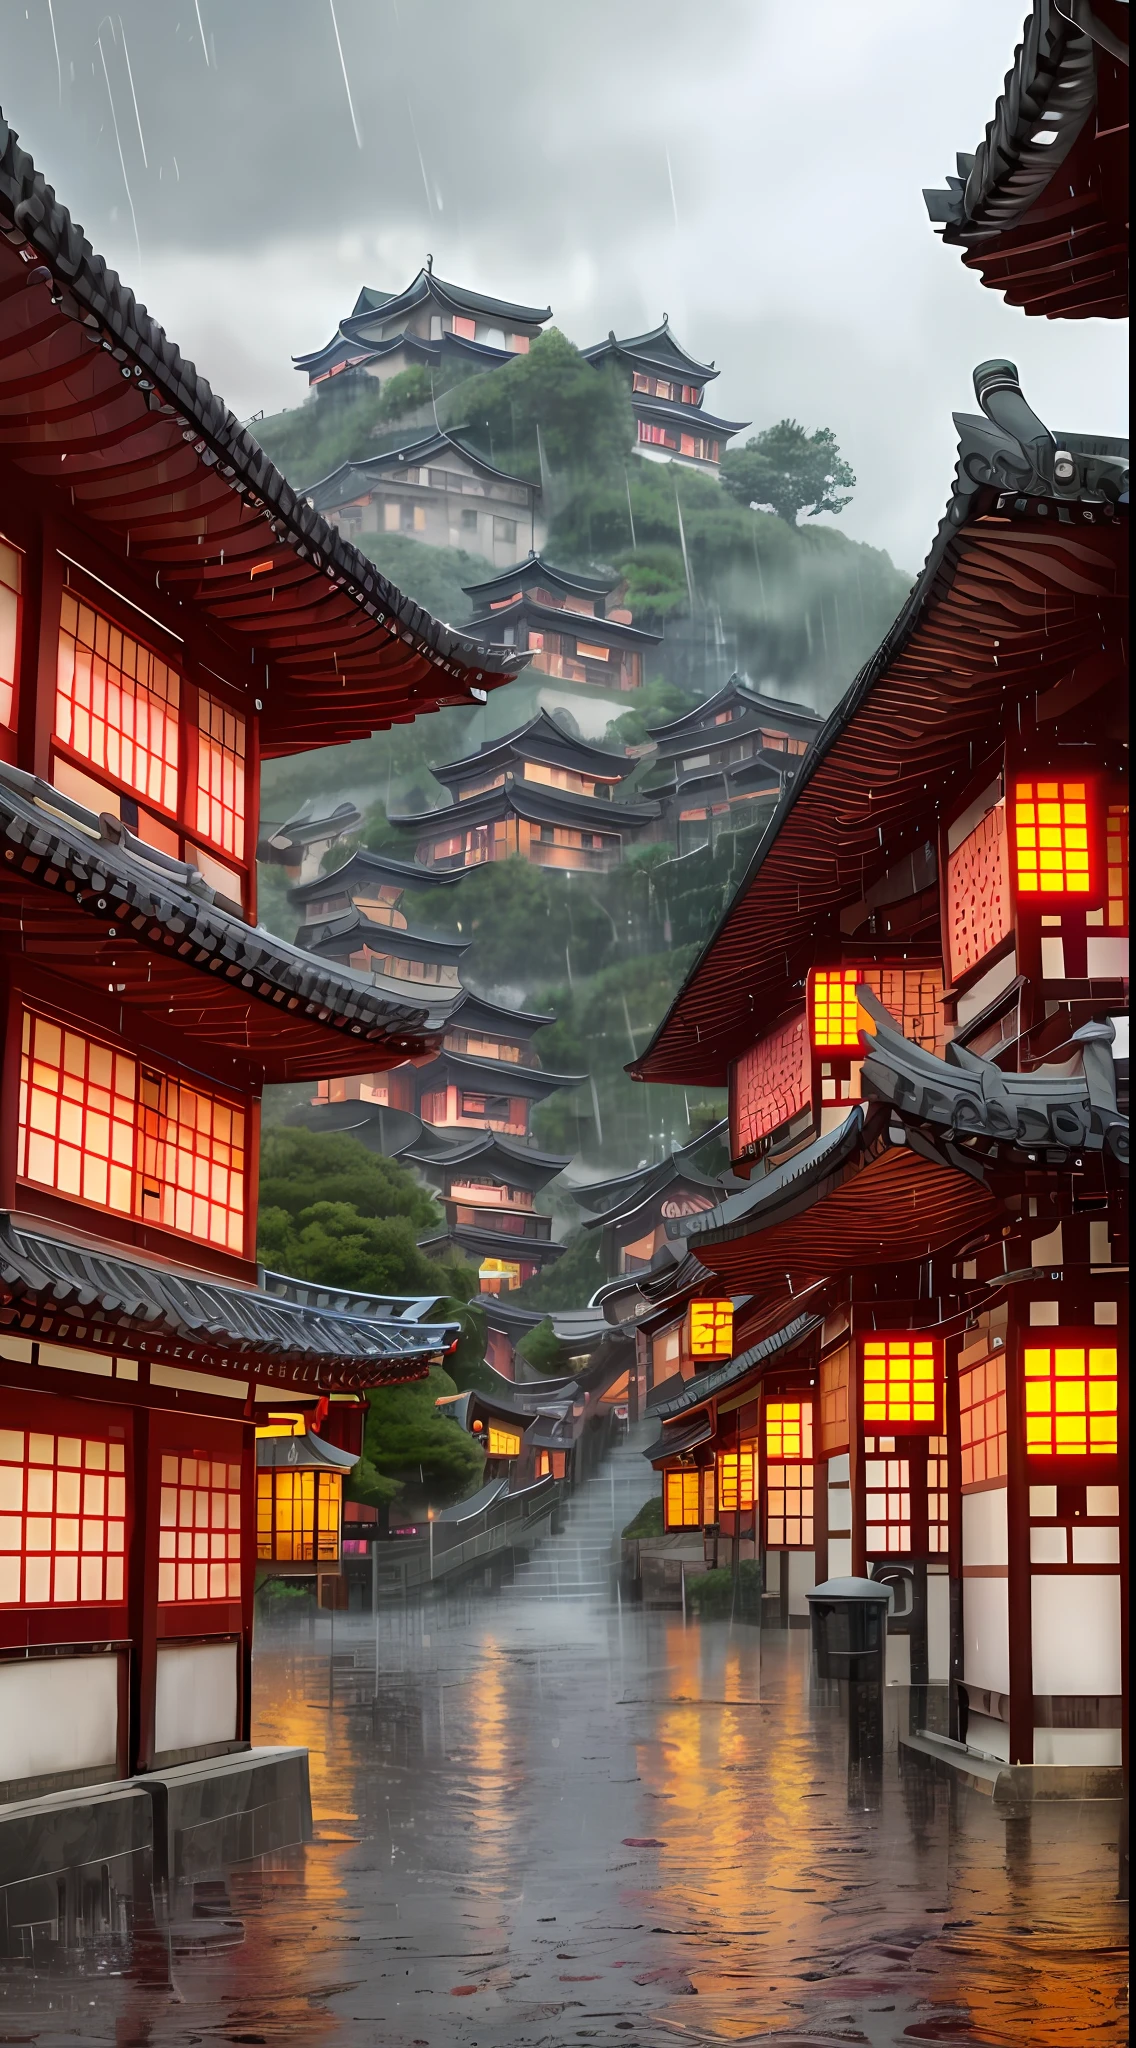 вид на деревню с множеством огней на зданиях, мечтательный китайский городок, китайская деревня, потрясающие обои, японский город, японская деревня, гиперреалистичная фотография города, старая азиатская деревня, японский город, от Рэймонда Хана, дождливый вечер, киберпанк китайский древний замок, красиво освещенные здания, вечером во время дождя, красиво и эстетично, фотография, Кинематографический, 8К, высокая детализация ((ливень)))